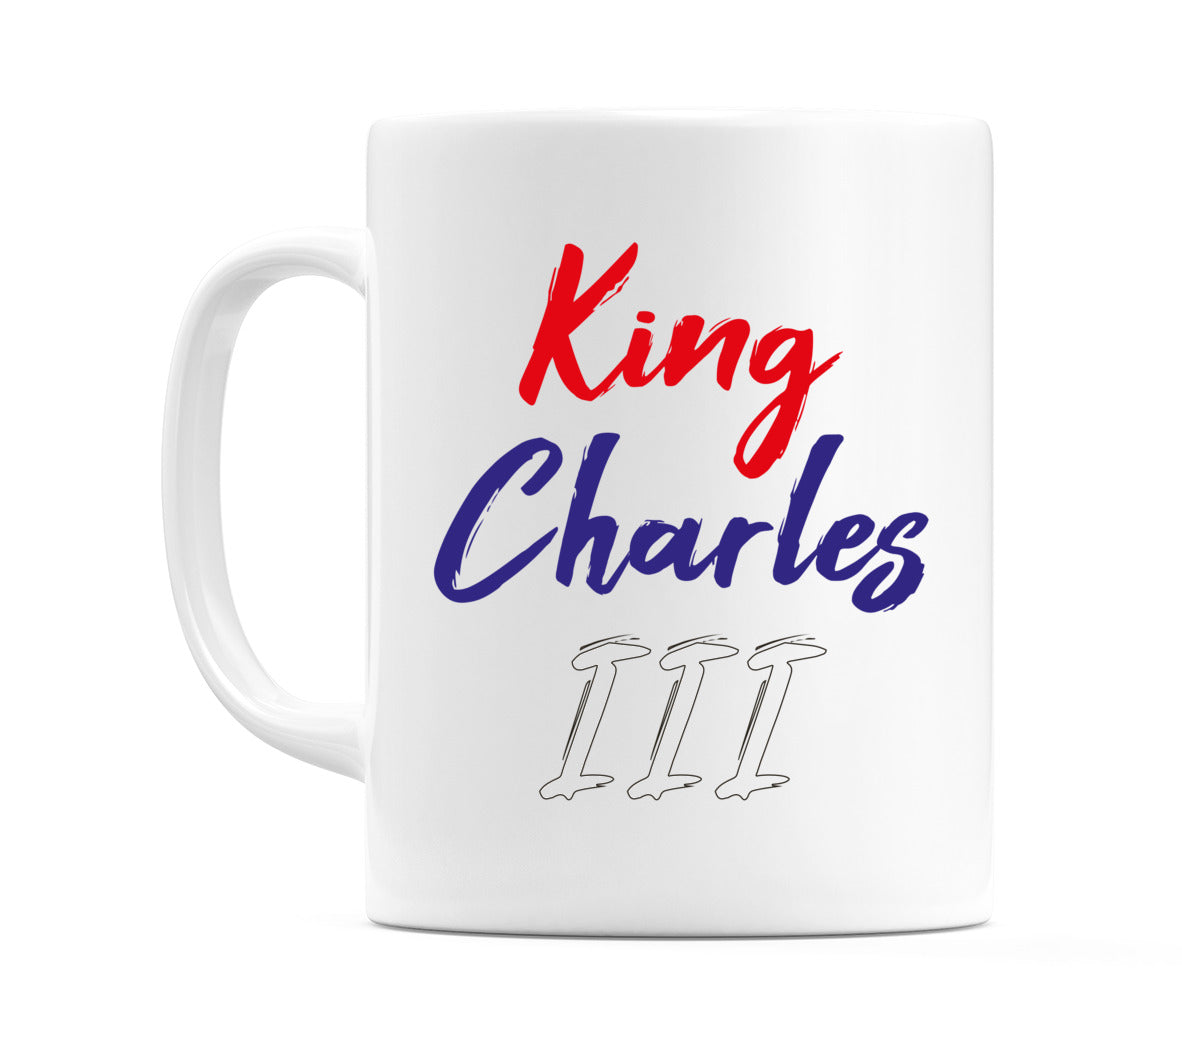 King Charles III in Red, Blue & White Mug